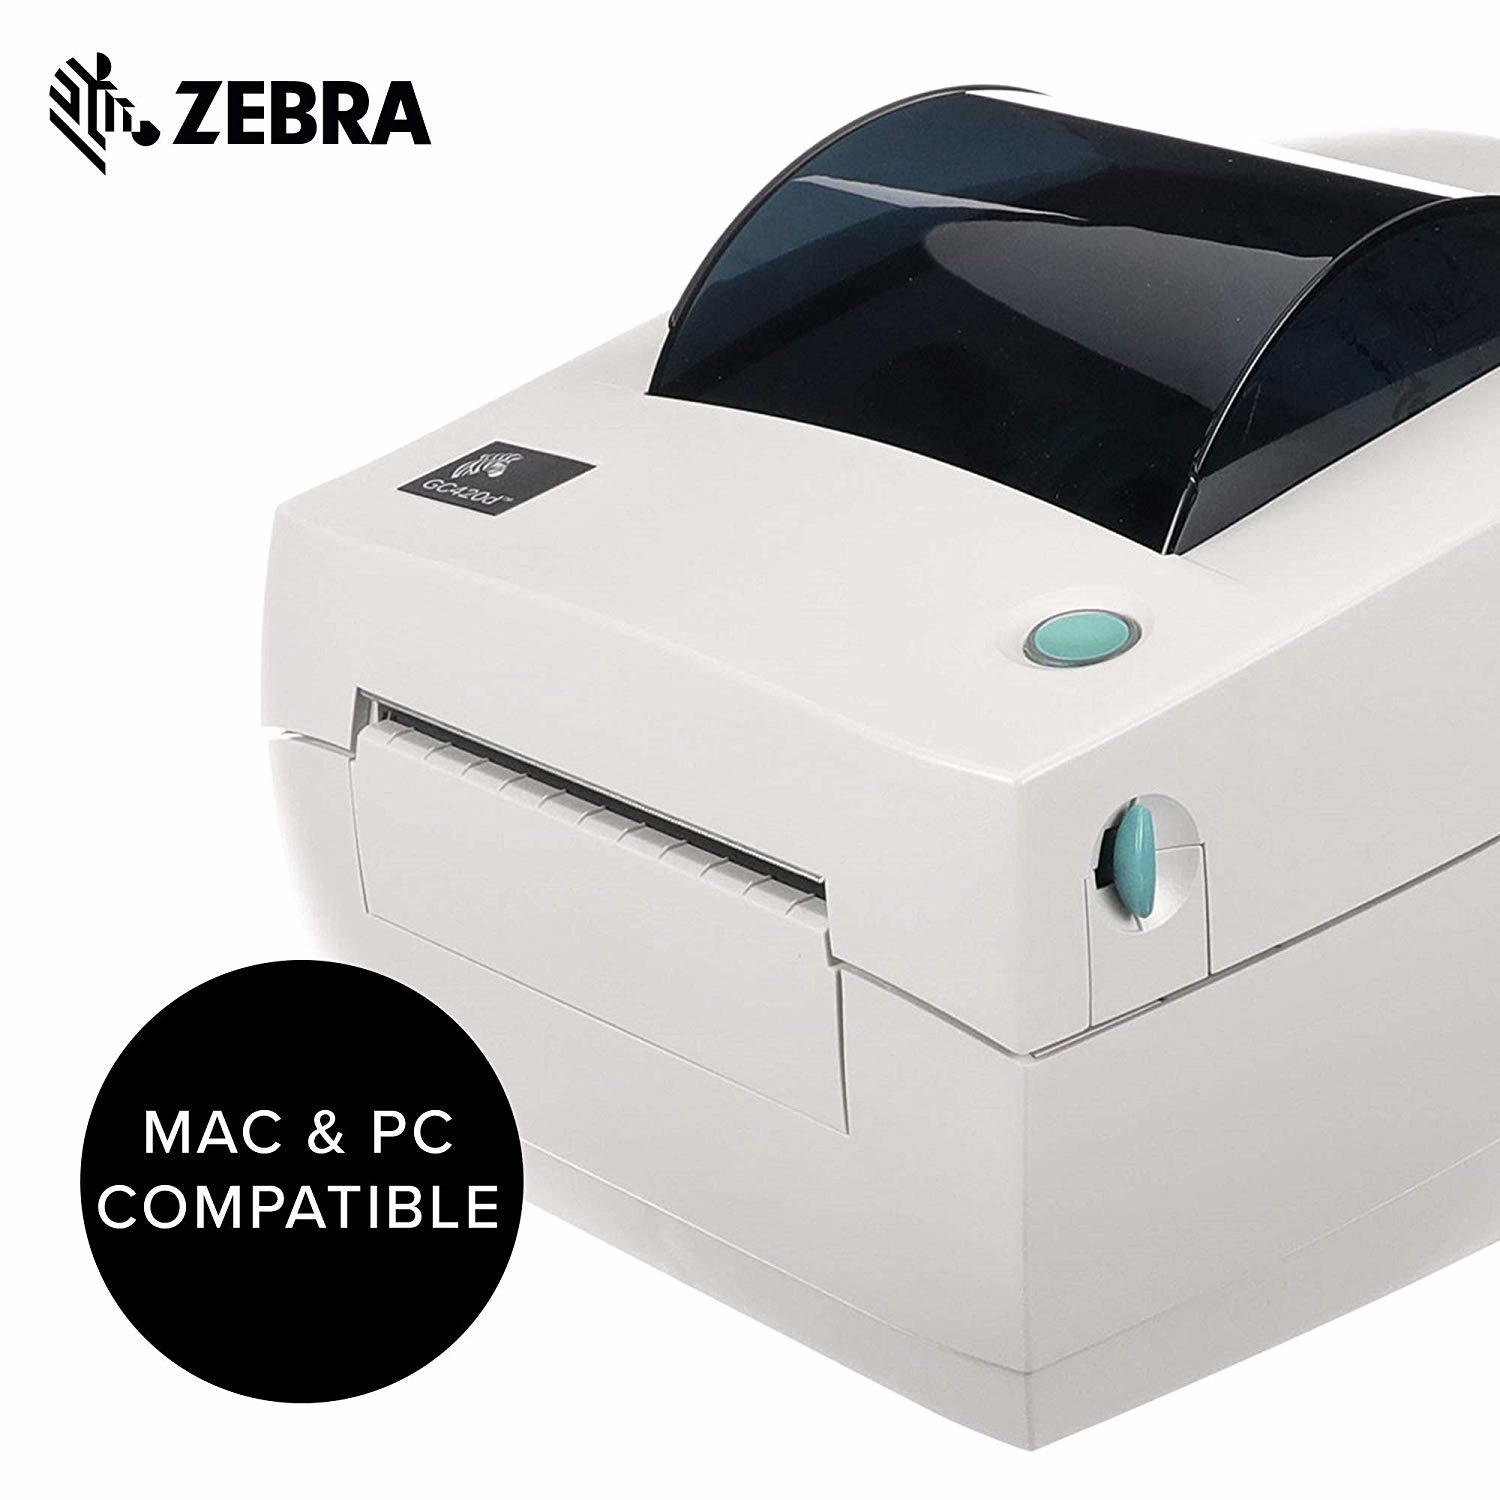 Zebra Gc420d Direct Thermal Desktop Label Printer Gc420 200510 000 Printers 3542